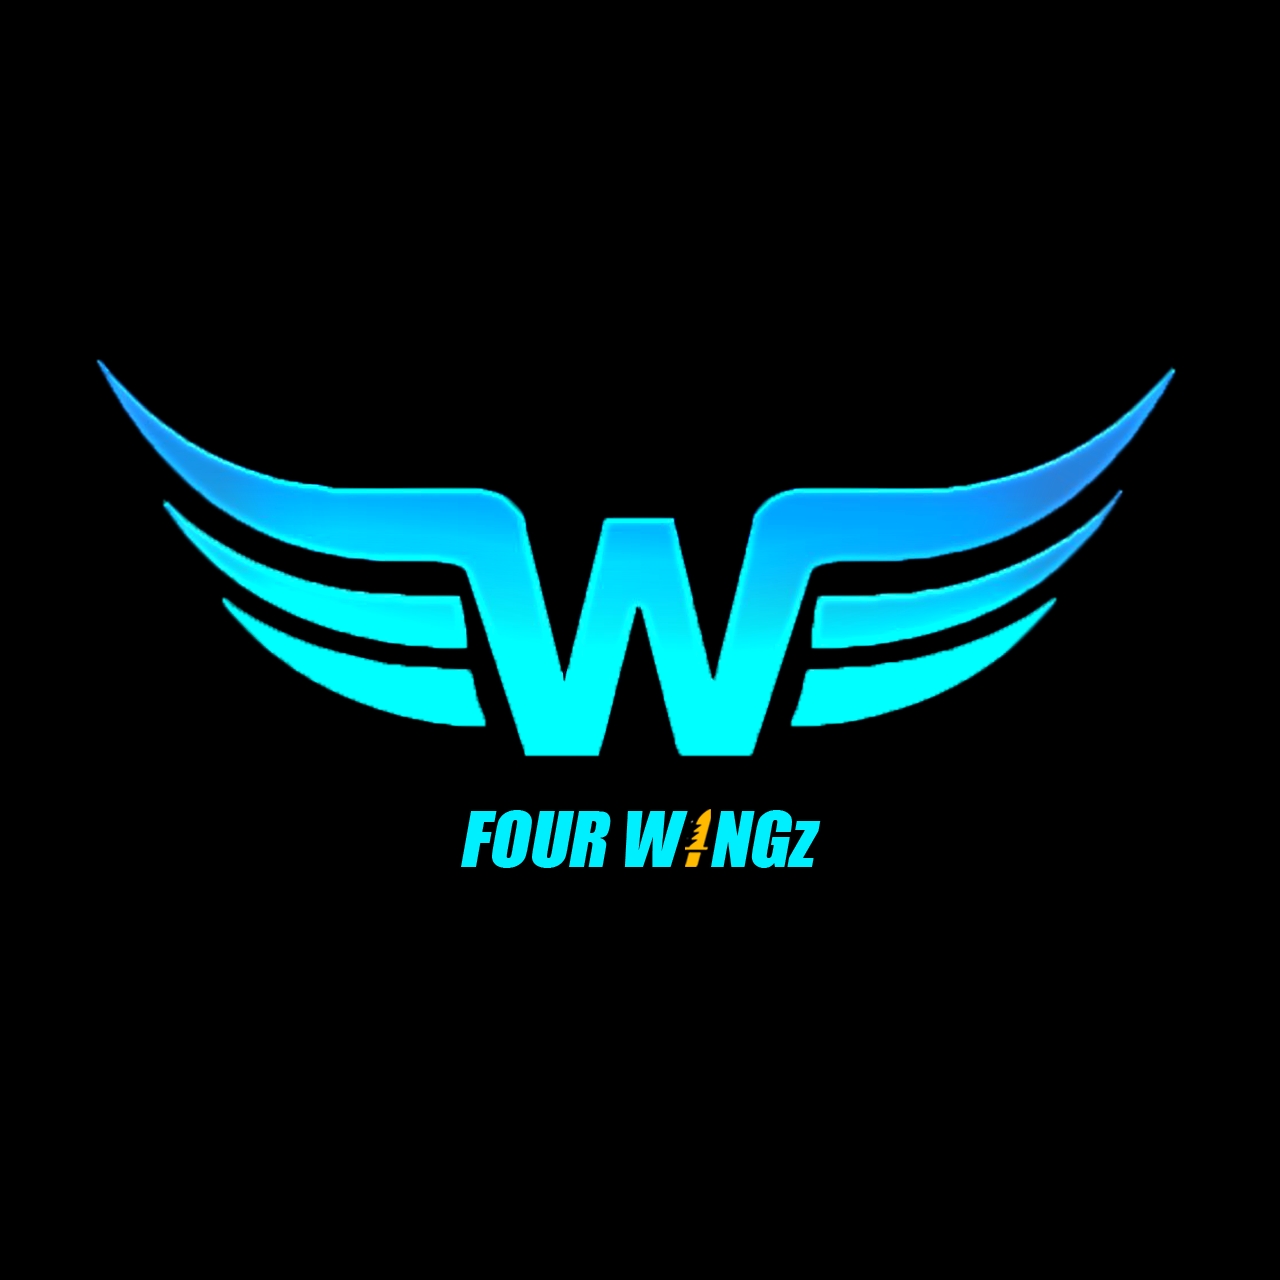 Four WINGz